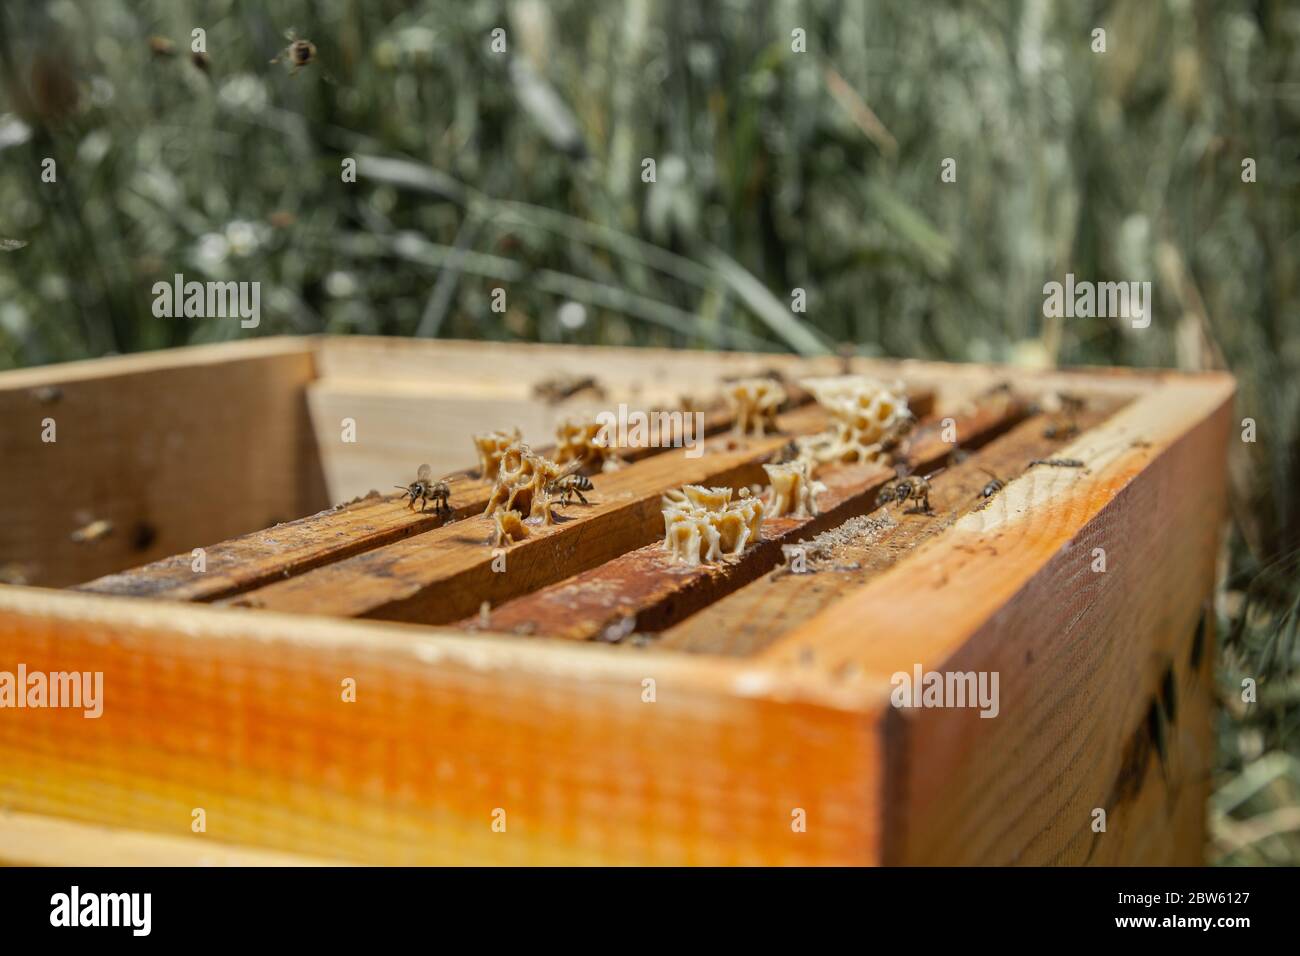 Gaziantep Turkei Mai Eine Bienenwabe Mit Bienen Auf Dem Bauernhof Abu Ratib Ein Syrischer Fluchtling